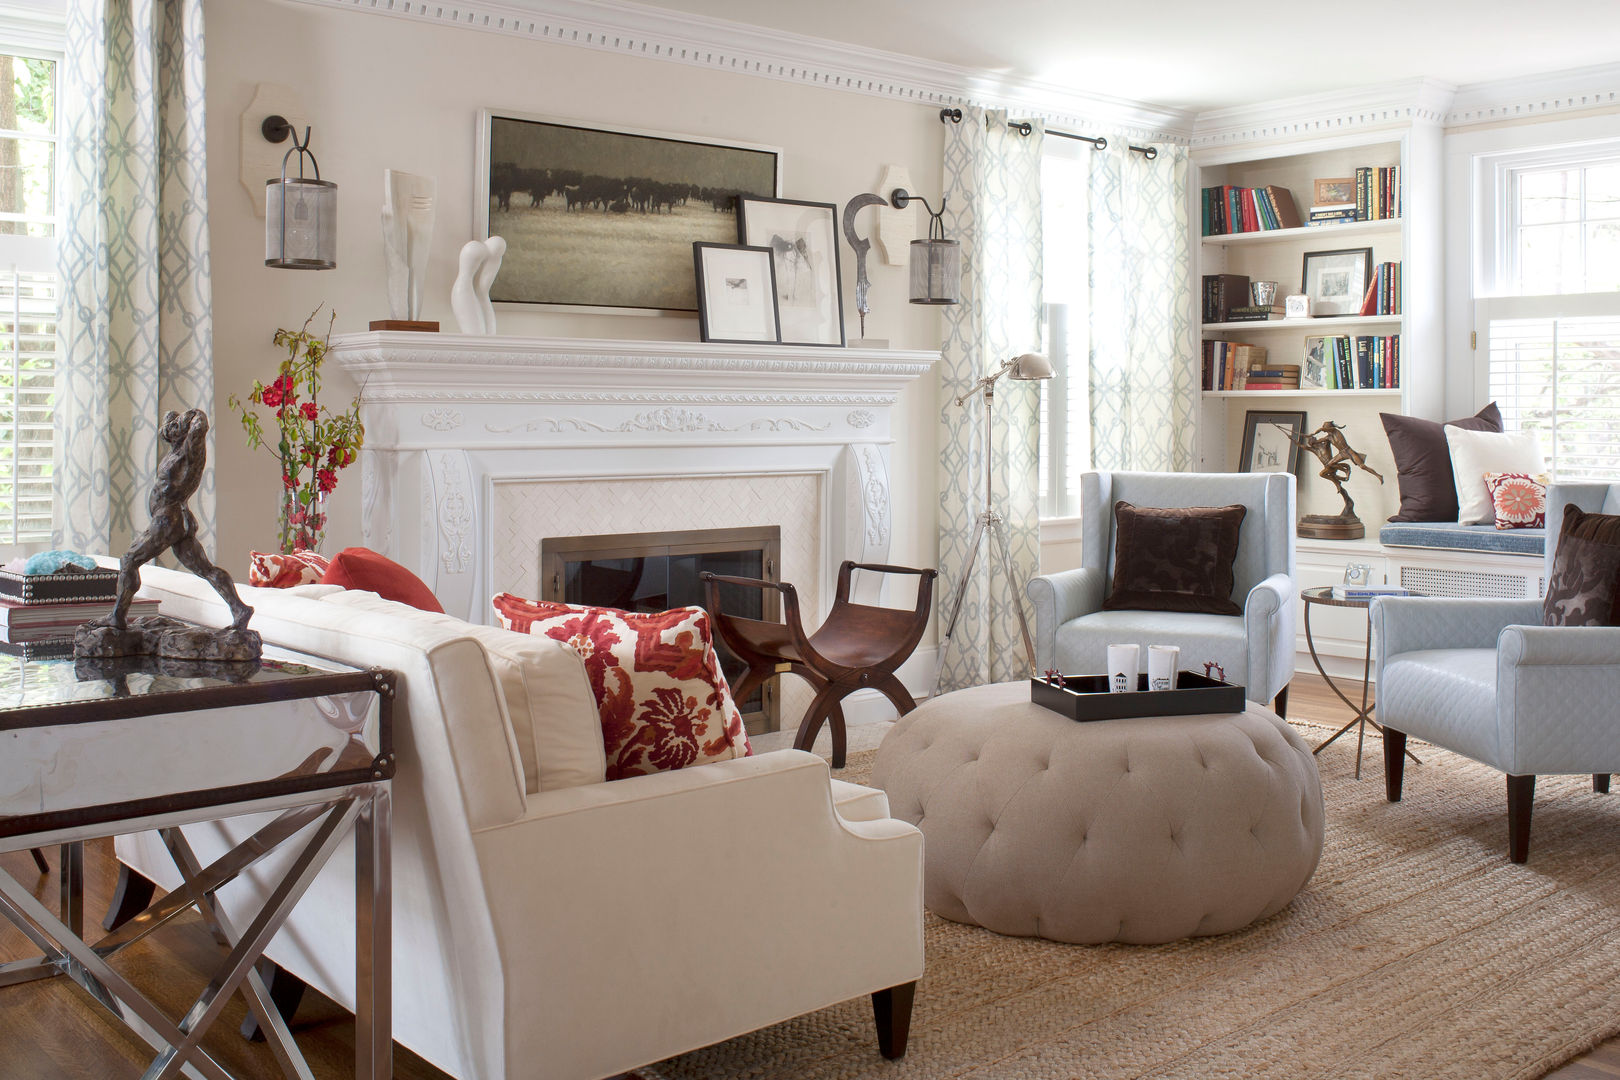 Denver Country Club Home, Andrea Schumacher Interiors Andrea Schumacher Interiors Classic style living room